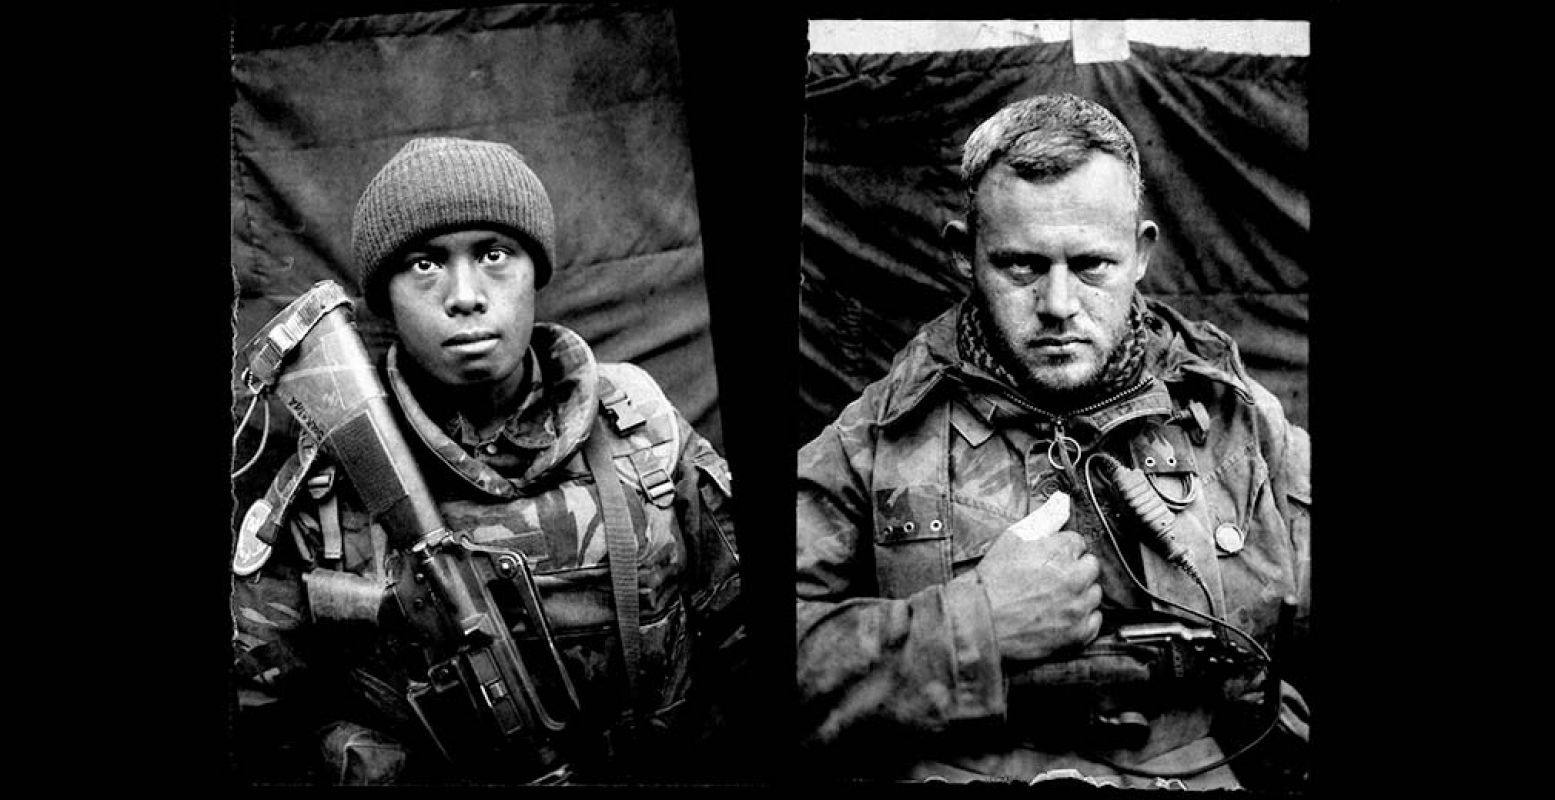 De soldaten van de foto's zijn ontdaan van alle opsmuk. Foto: Martin Roemers, courtesy Torch Gallery